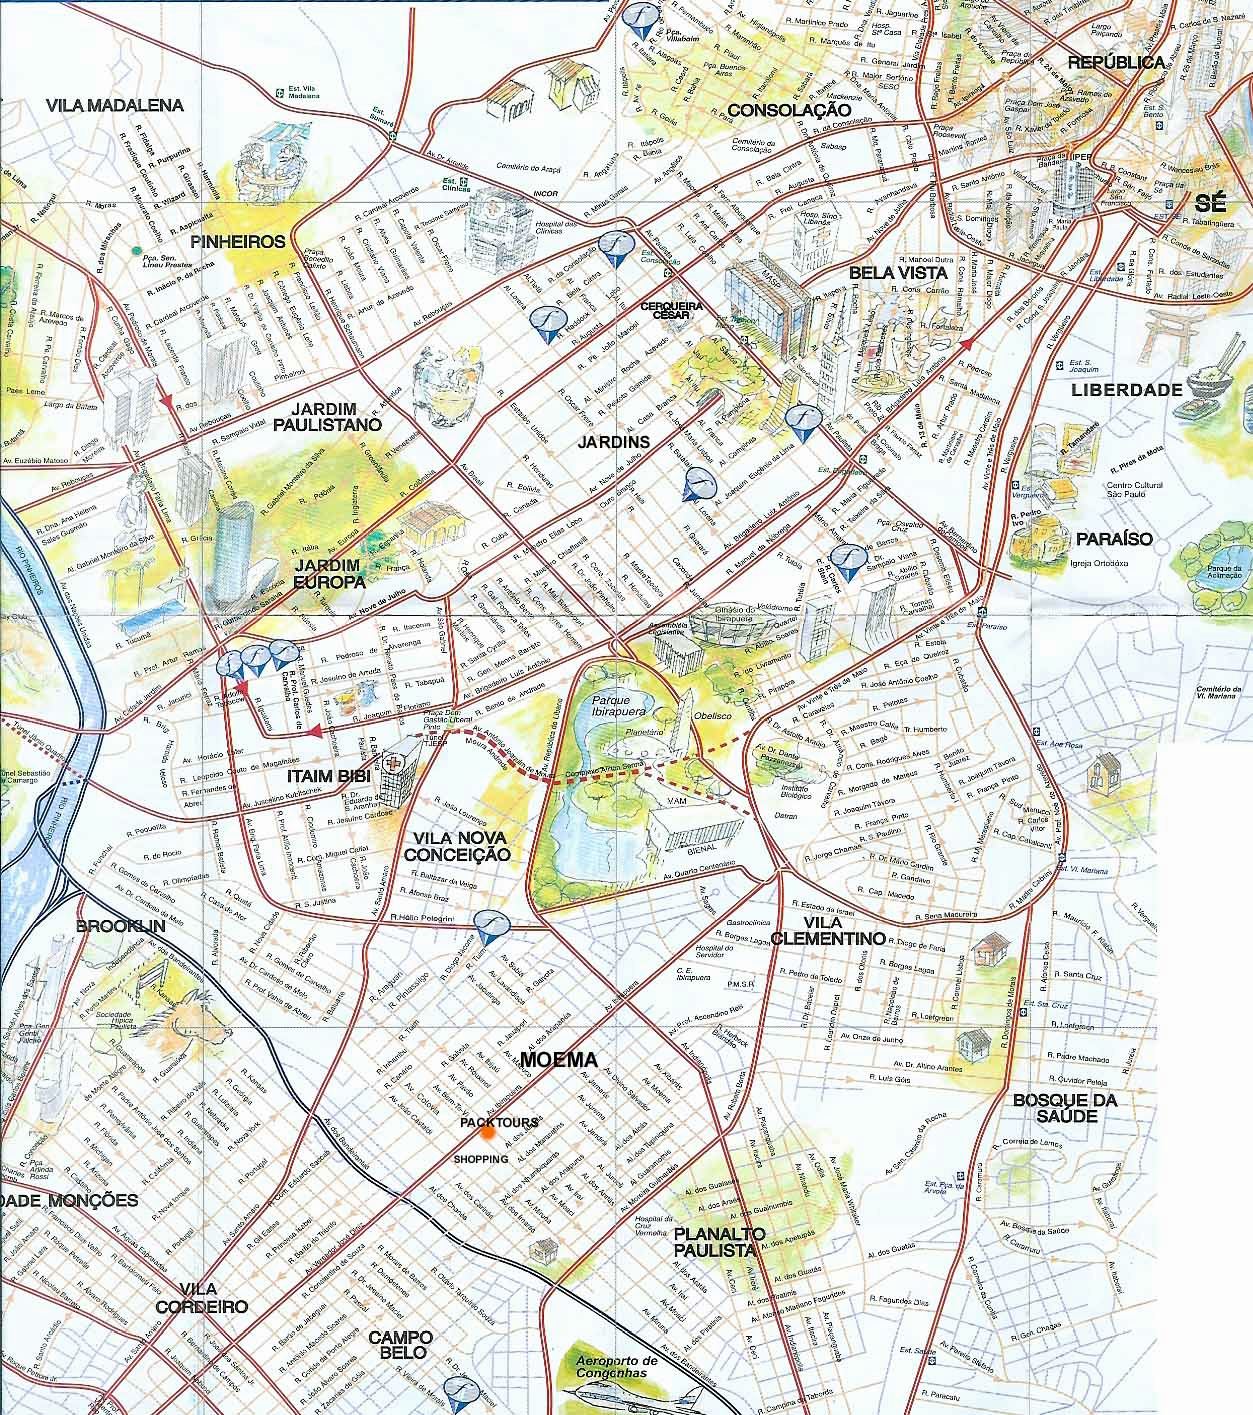 Stadtplan Von Sao Paulo Detaillierte Gedruckte Karten Von Sao Paulo Brasilien Der Herunterladenmoglichkeit